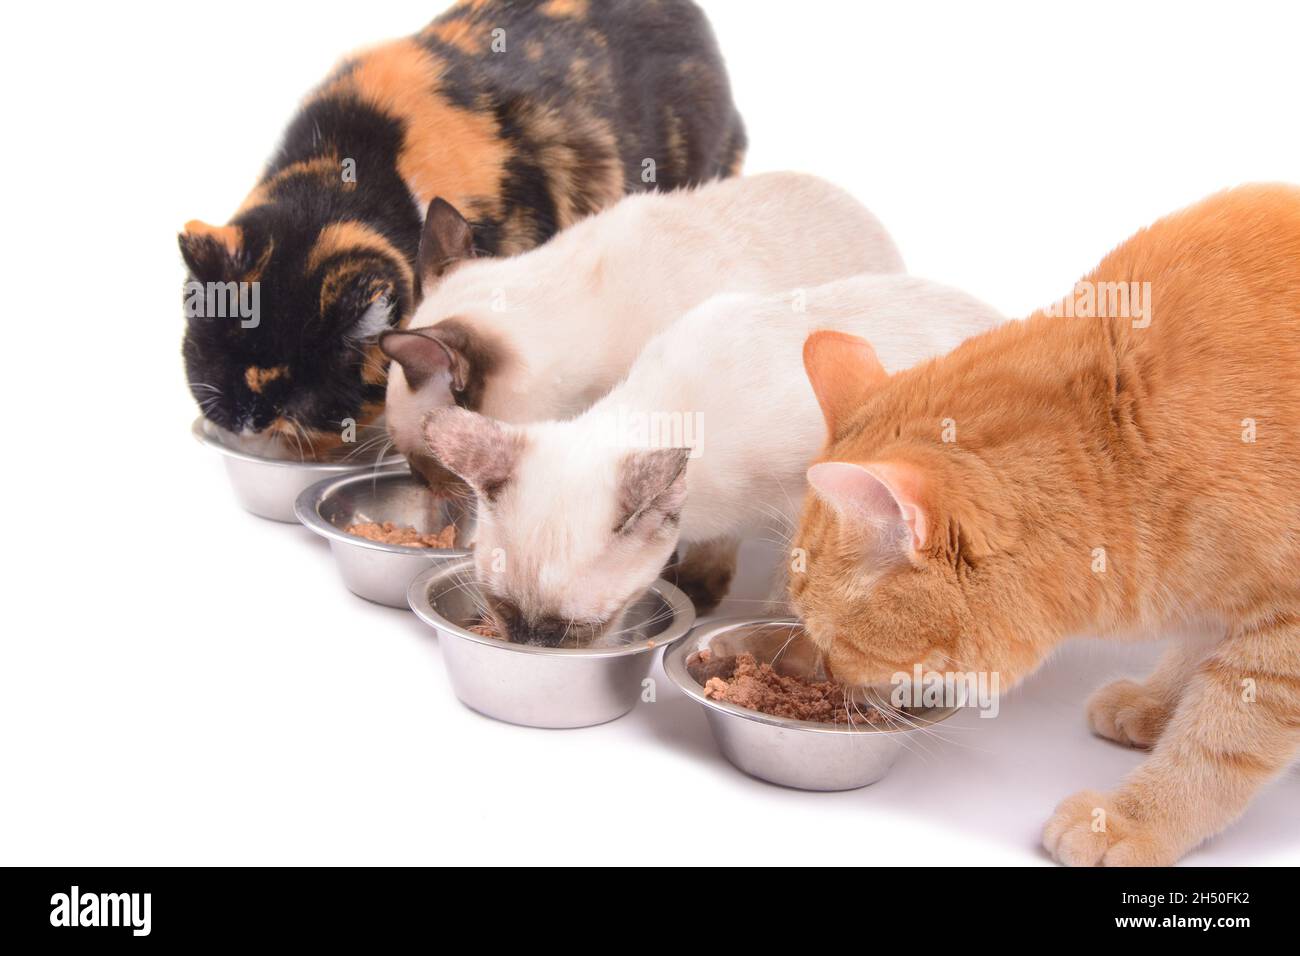 Quatre chats ayant un repas, deux chats adultes et deux chatons; sur blanc Banque D'Images